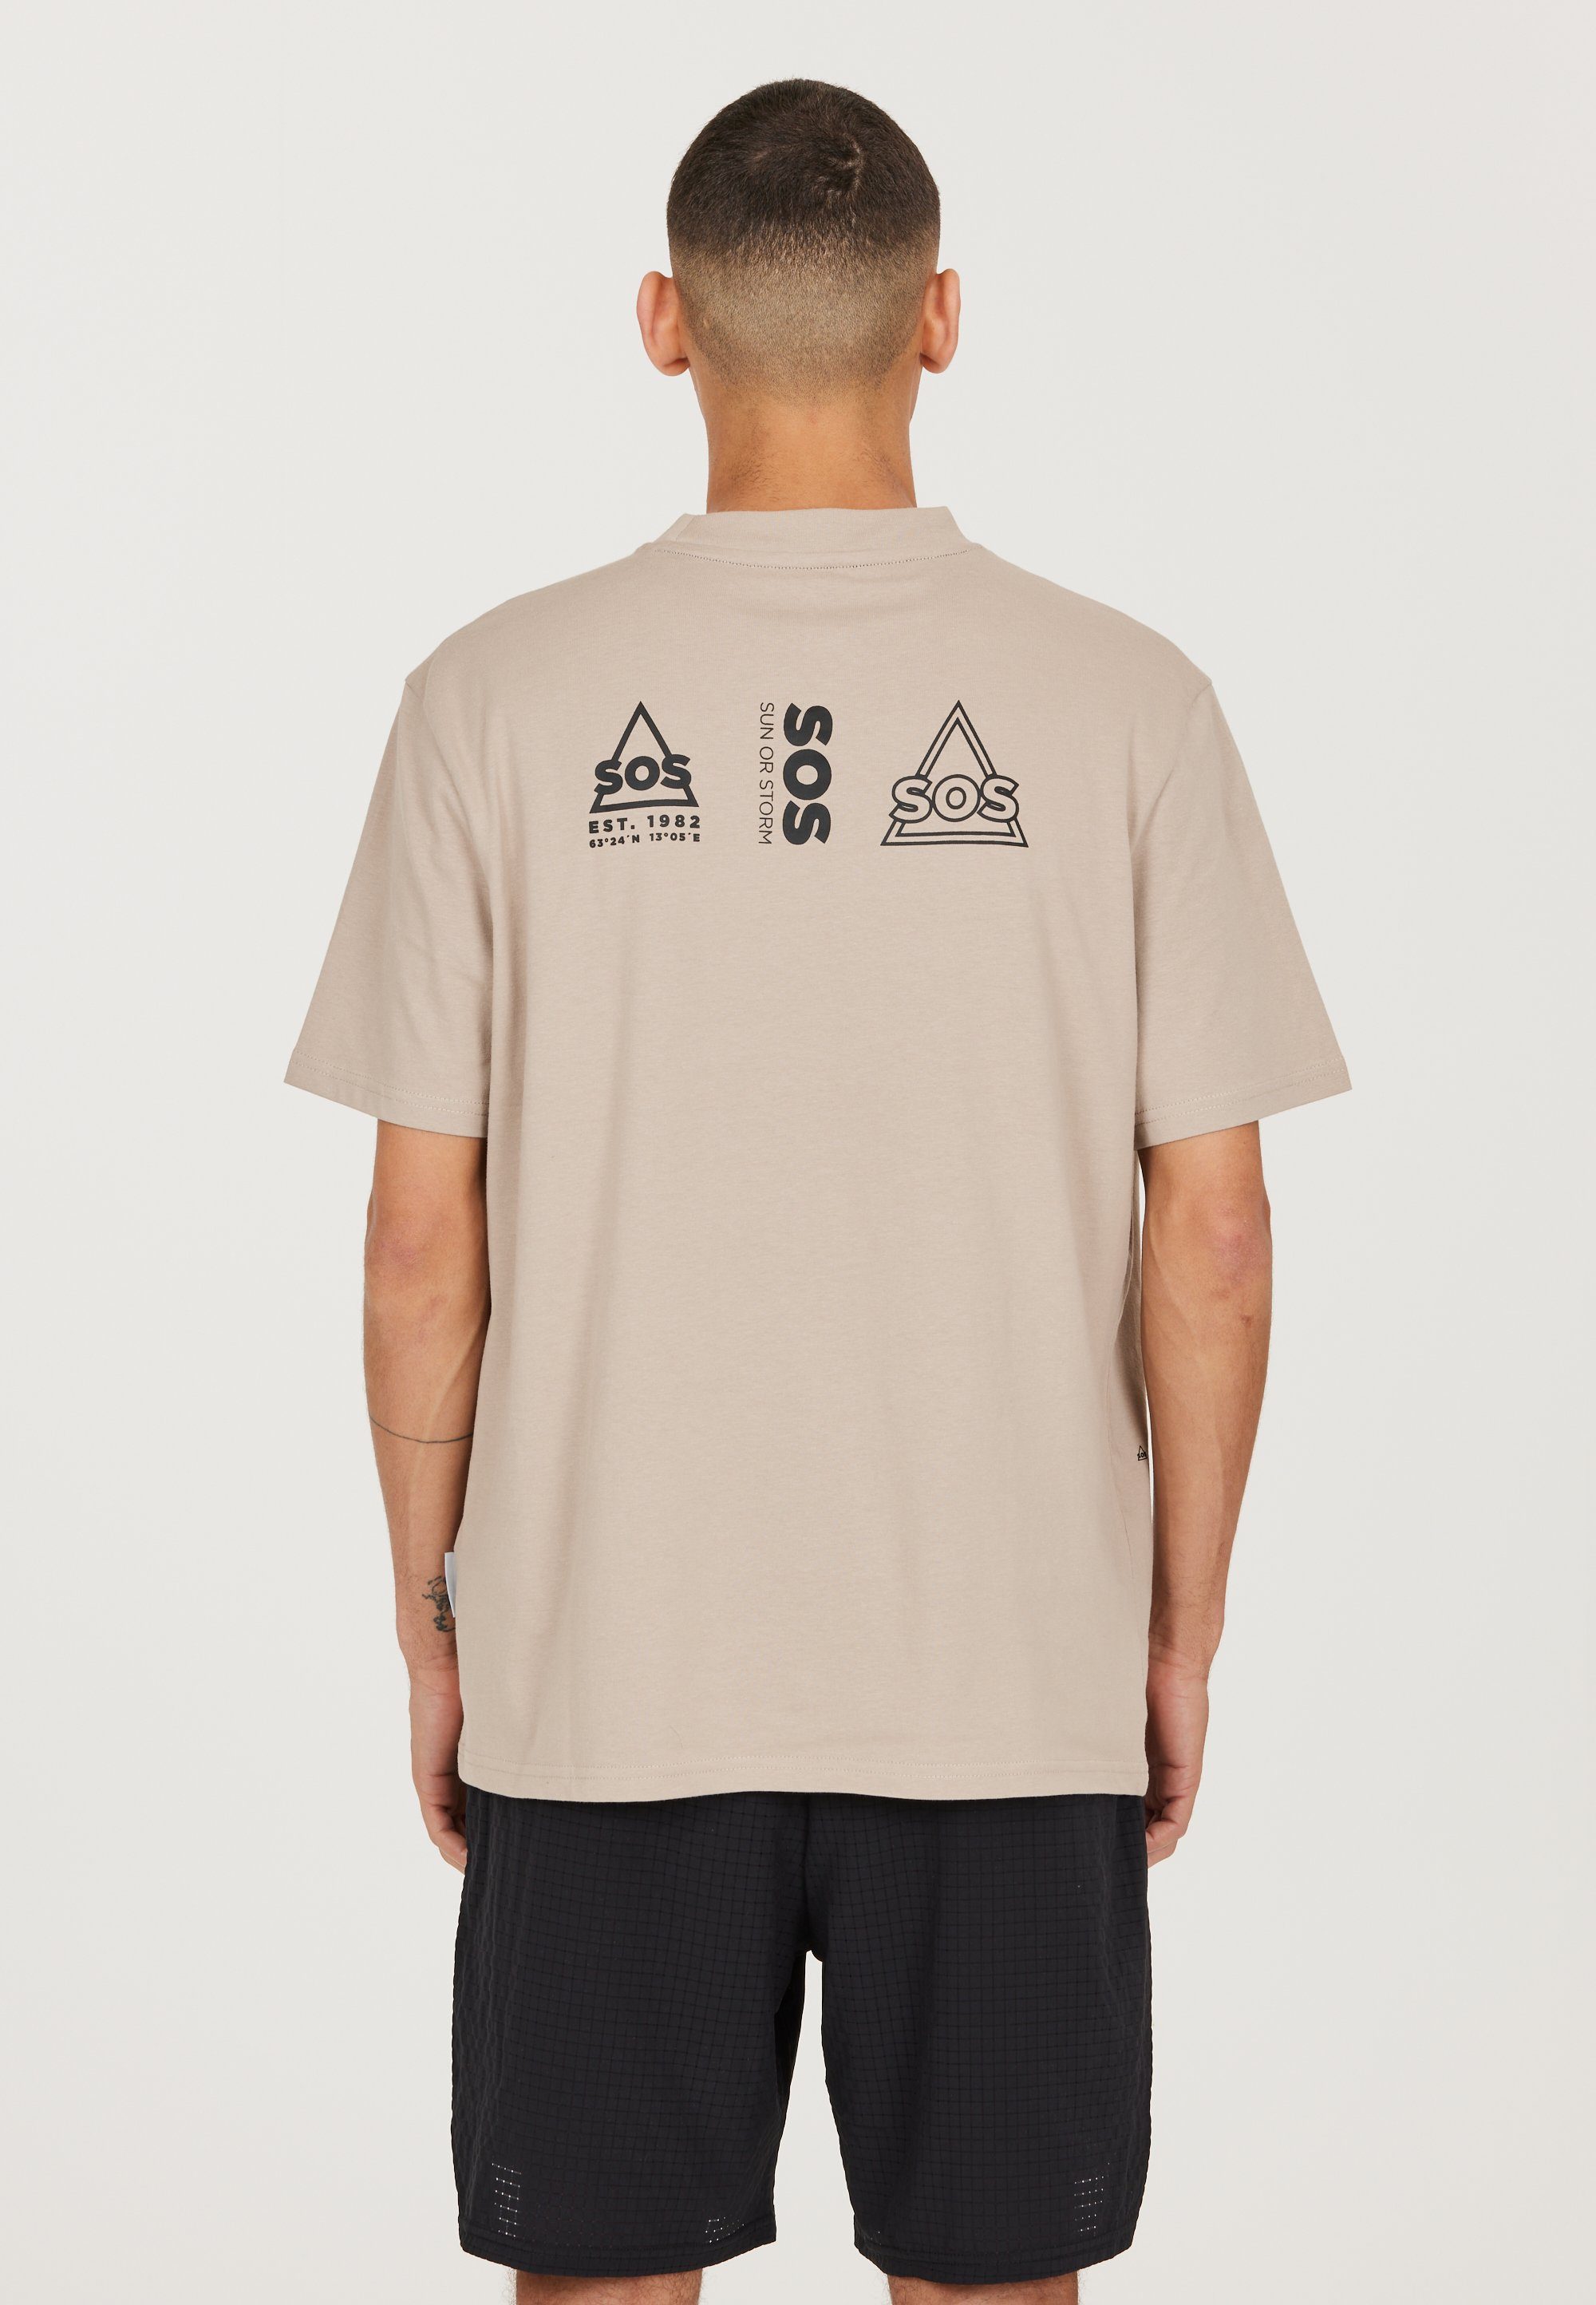 mit Dolomiti SOS taupe stylischem Funktionsshirt Logo-Design